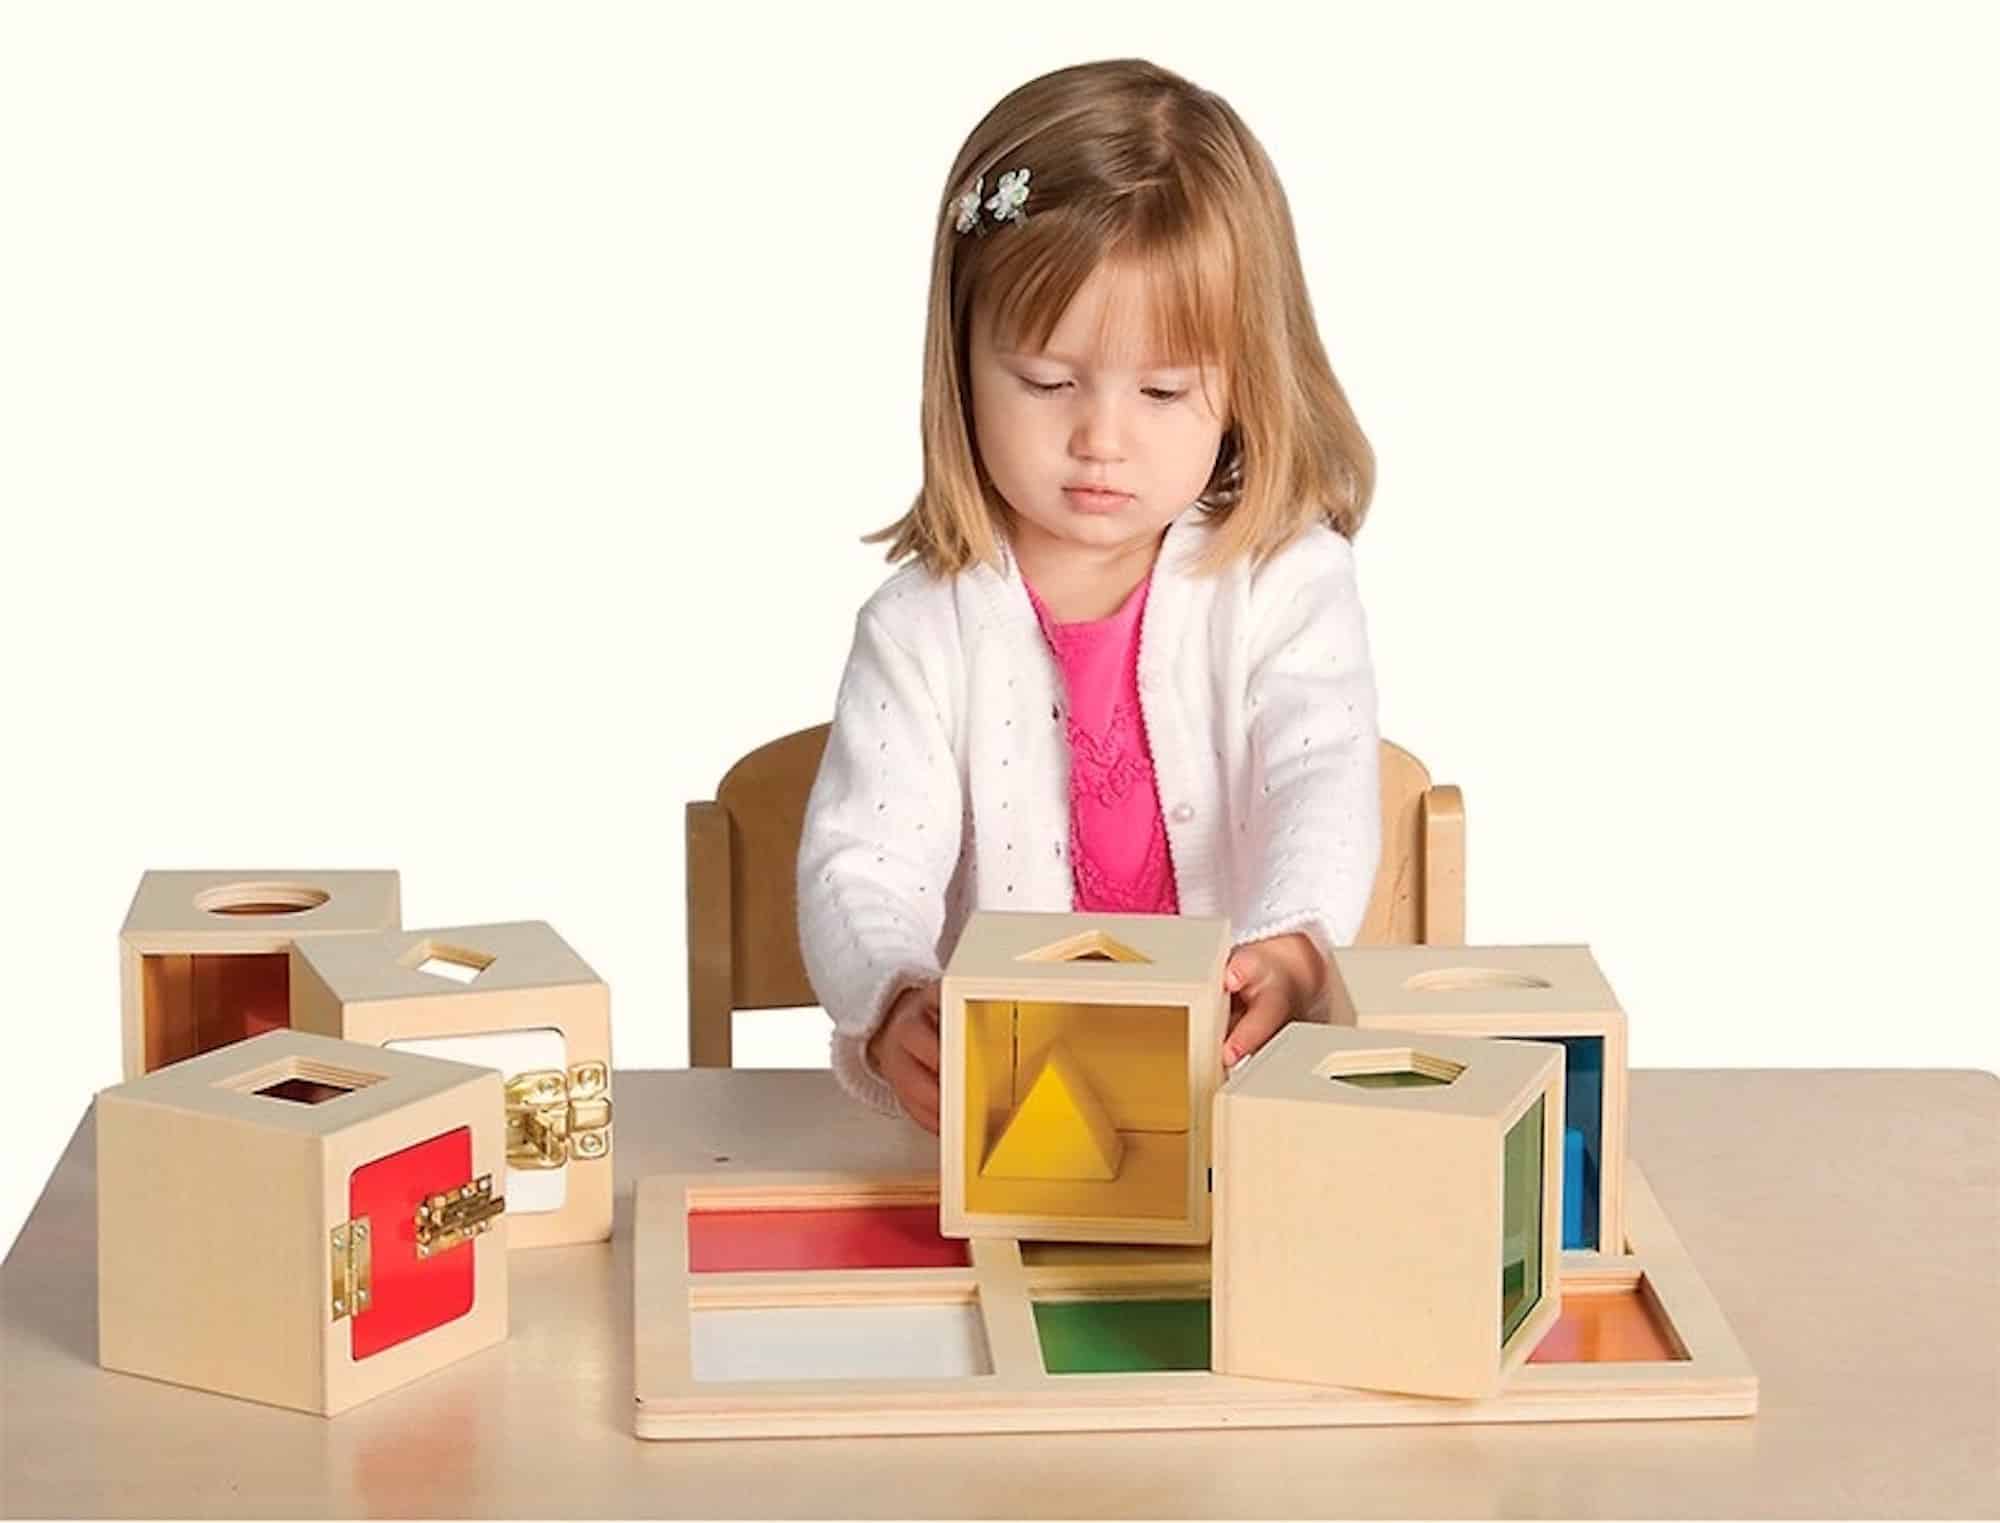 Juguetes Montessori para bebés y niños - Criar con Sentido Común